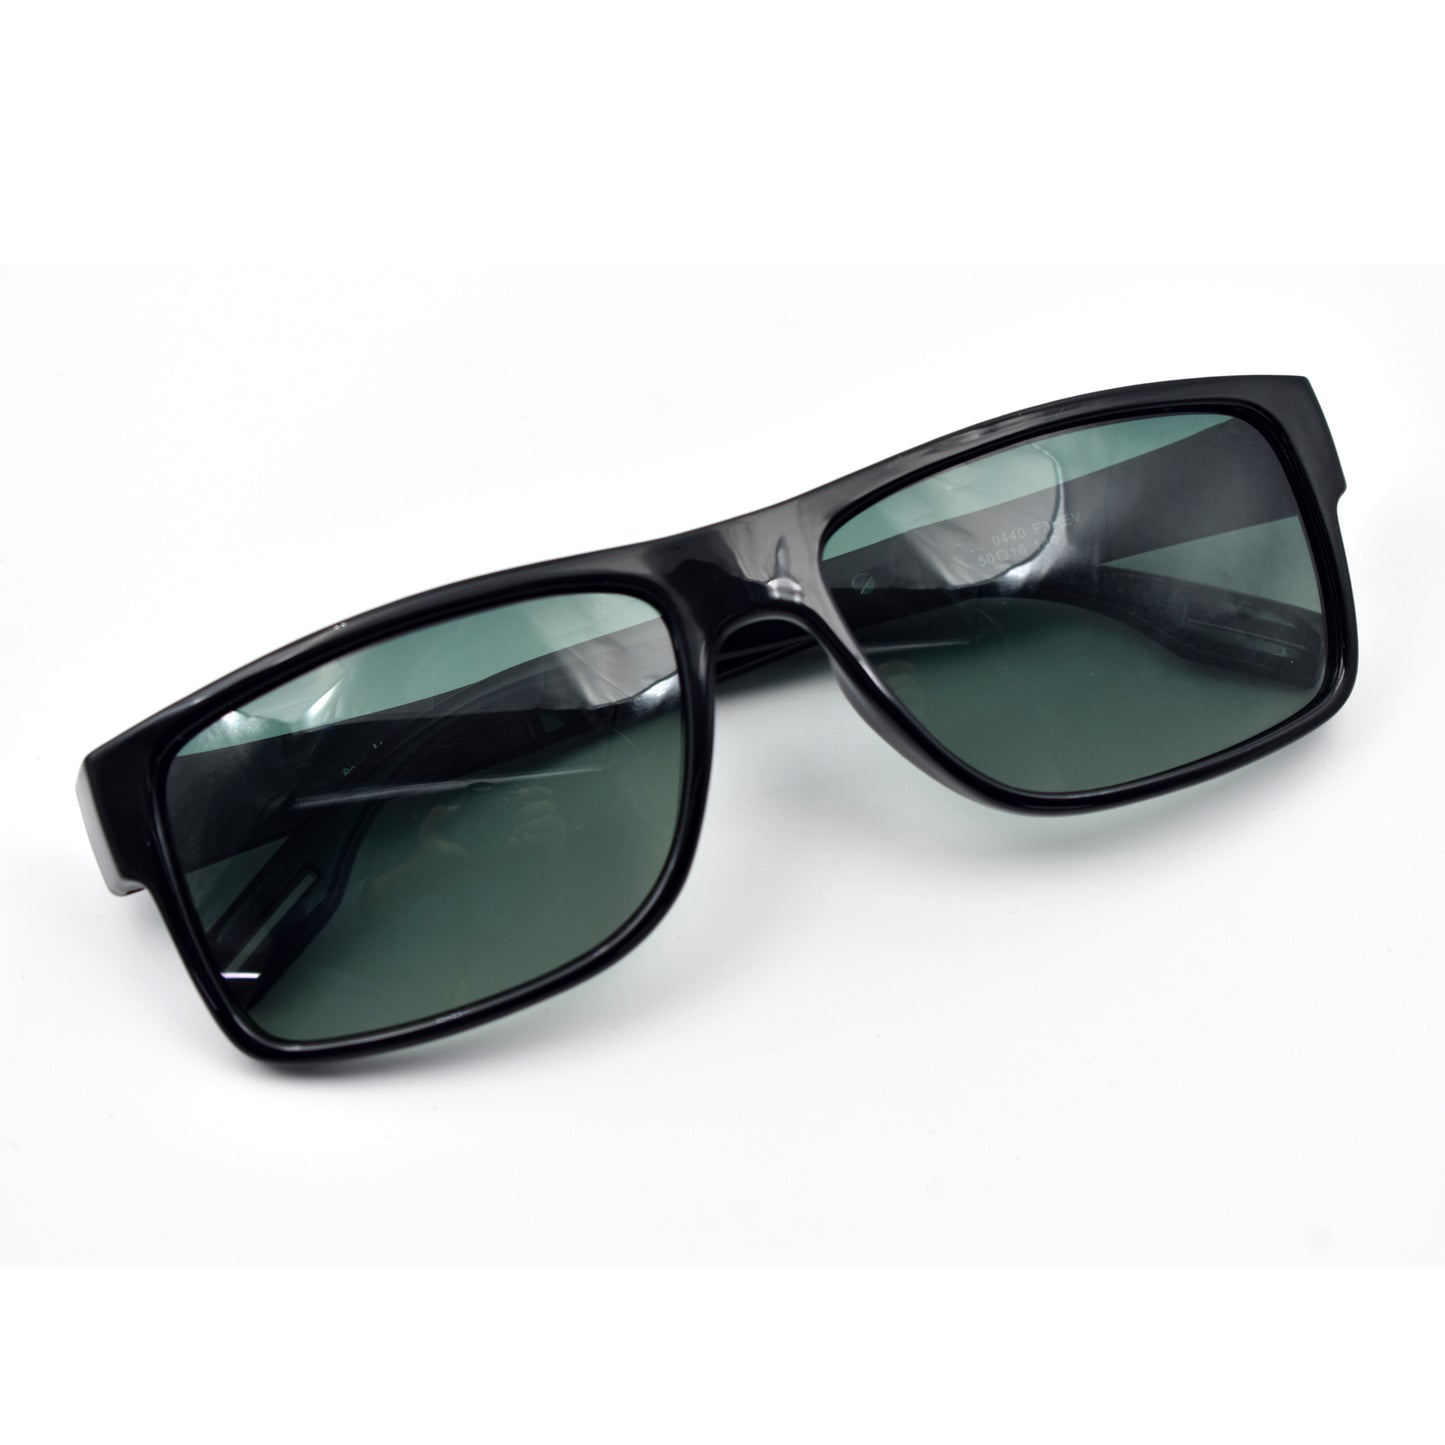 Trendy Stylish Luxury Polarized Sunglass | Bos 06 | Premium Quality